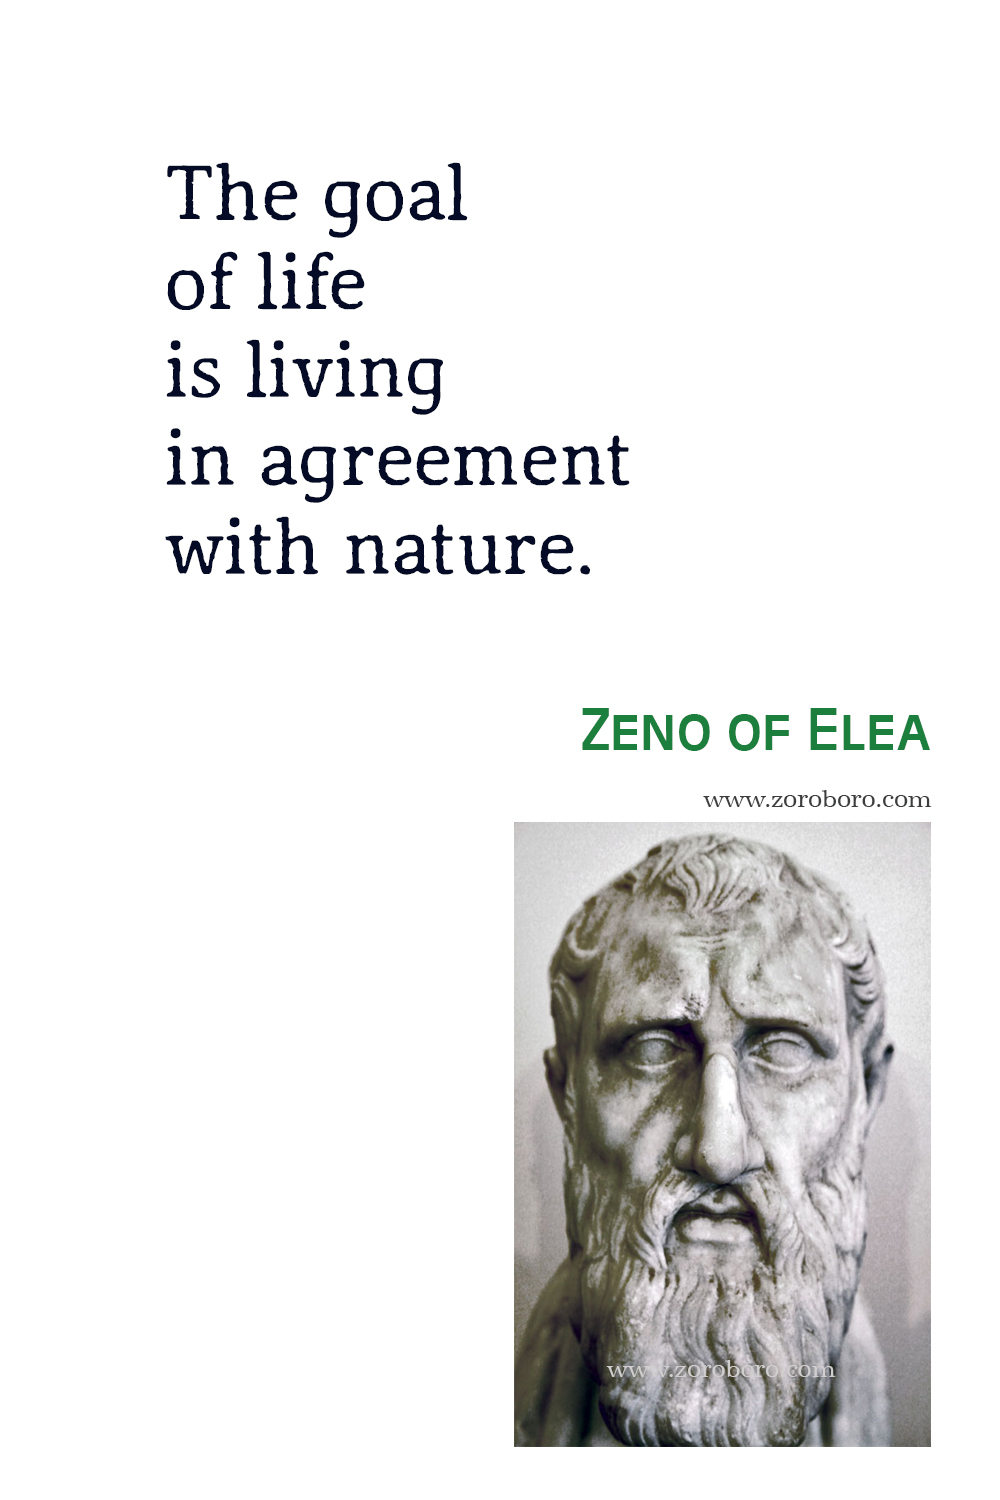 Zeno of Elea Quotes, Zeno of Elea Philosophy, Zeno of Elea, Zeno of Elea Photo, Zeno of Elea Theory, Zeno of Elea Quotes.